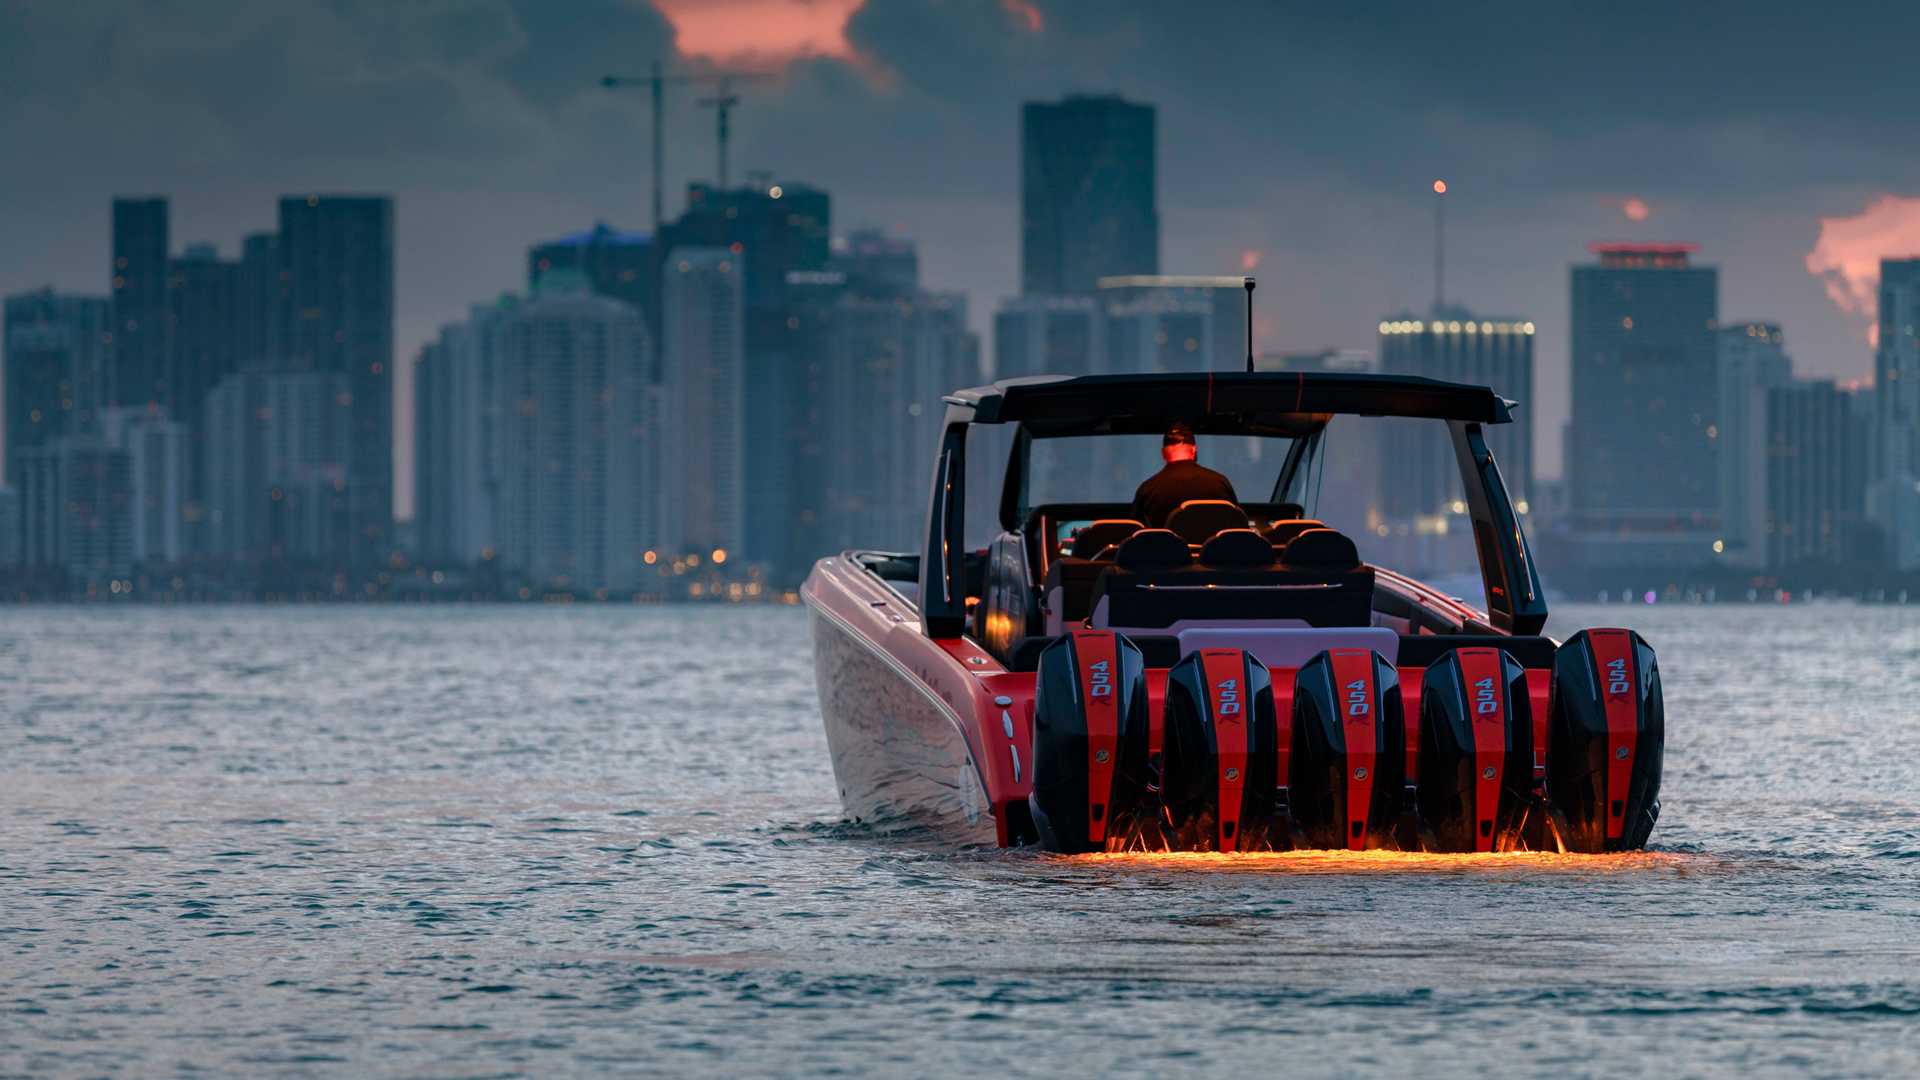 نمای قایق پرسرعت مرسدس آ ام گ نایت هاوک سری سیاه / Mercedes-AMG Black Series Cigarette Boat با منظره غروب